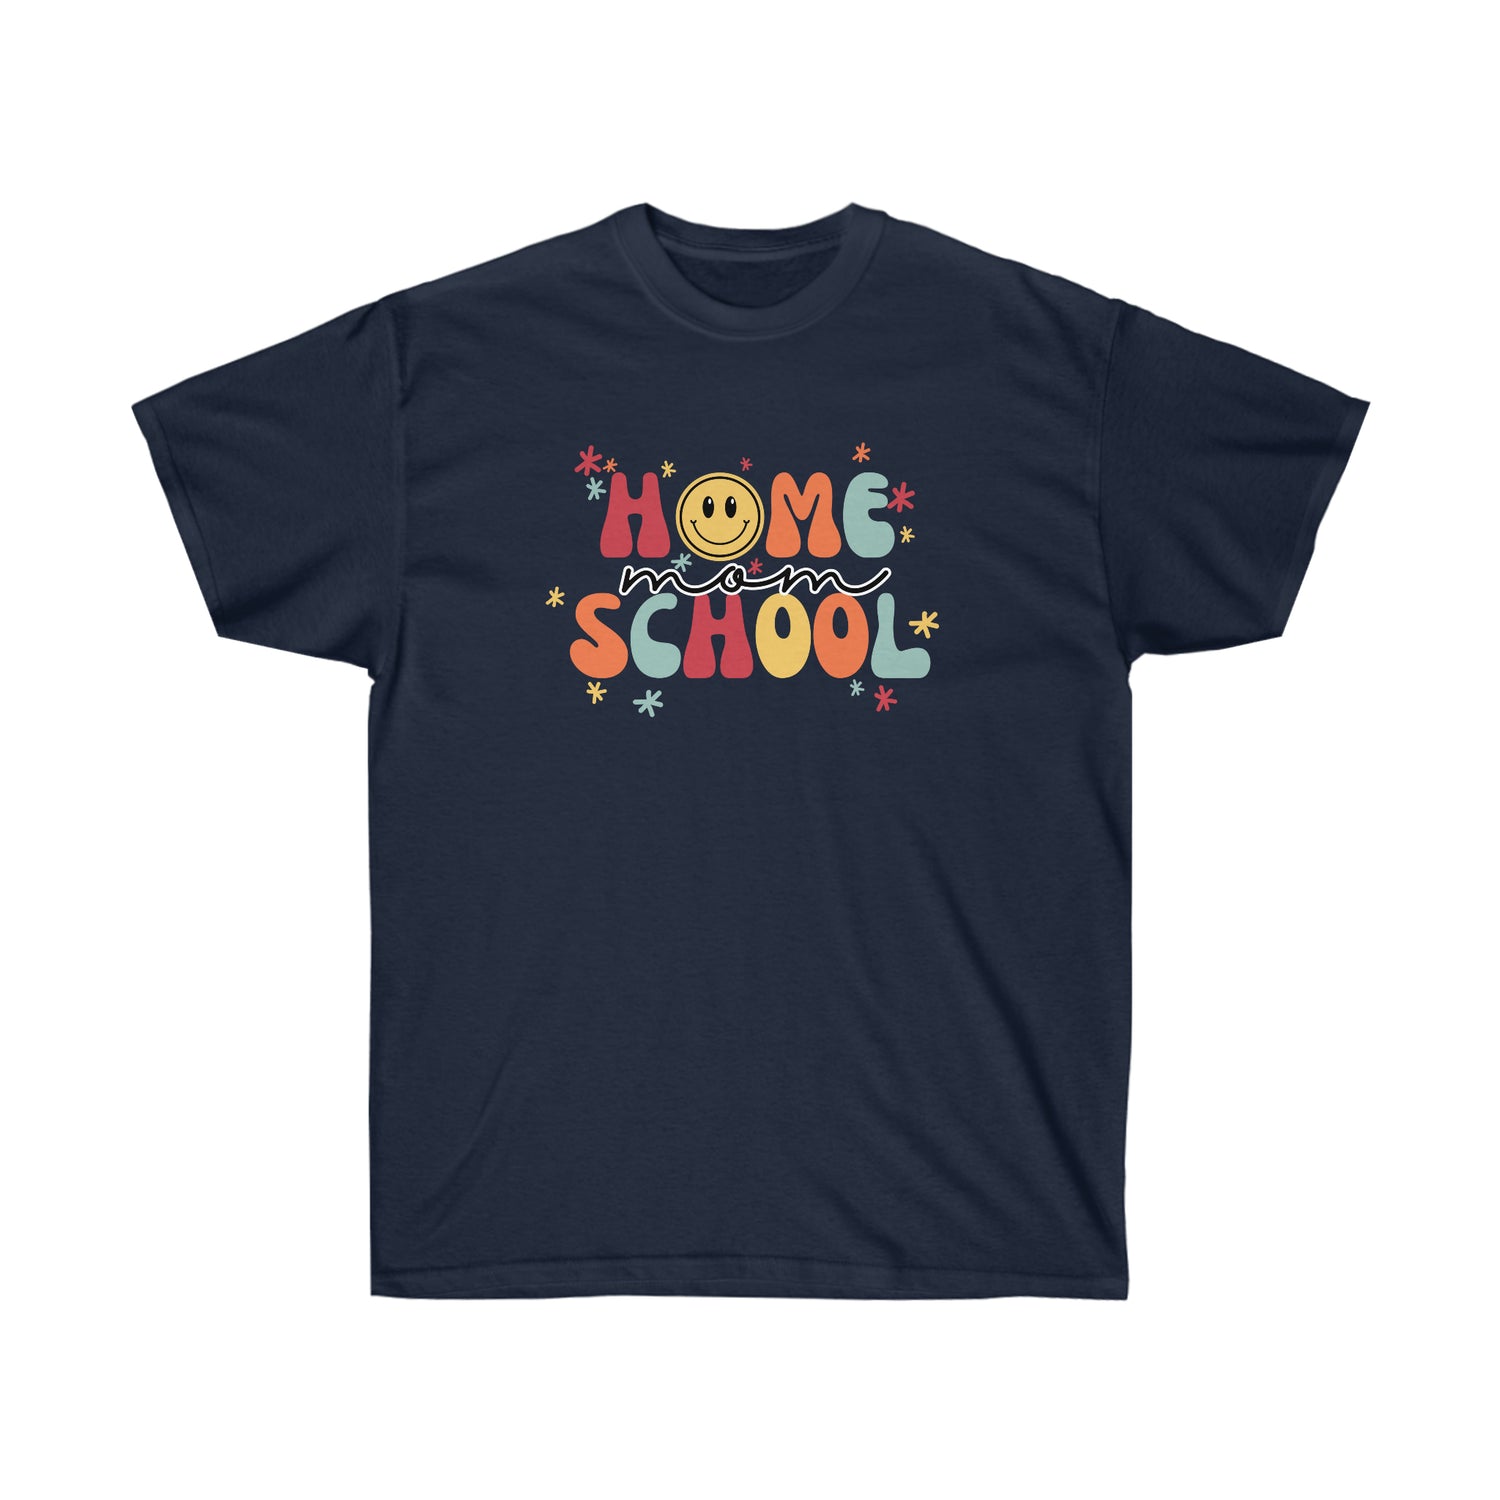 Cute Homeschool Mom Shirt